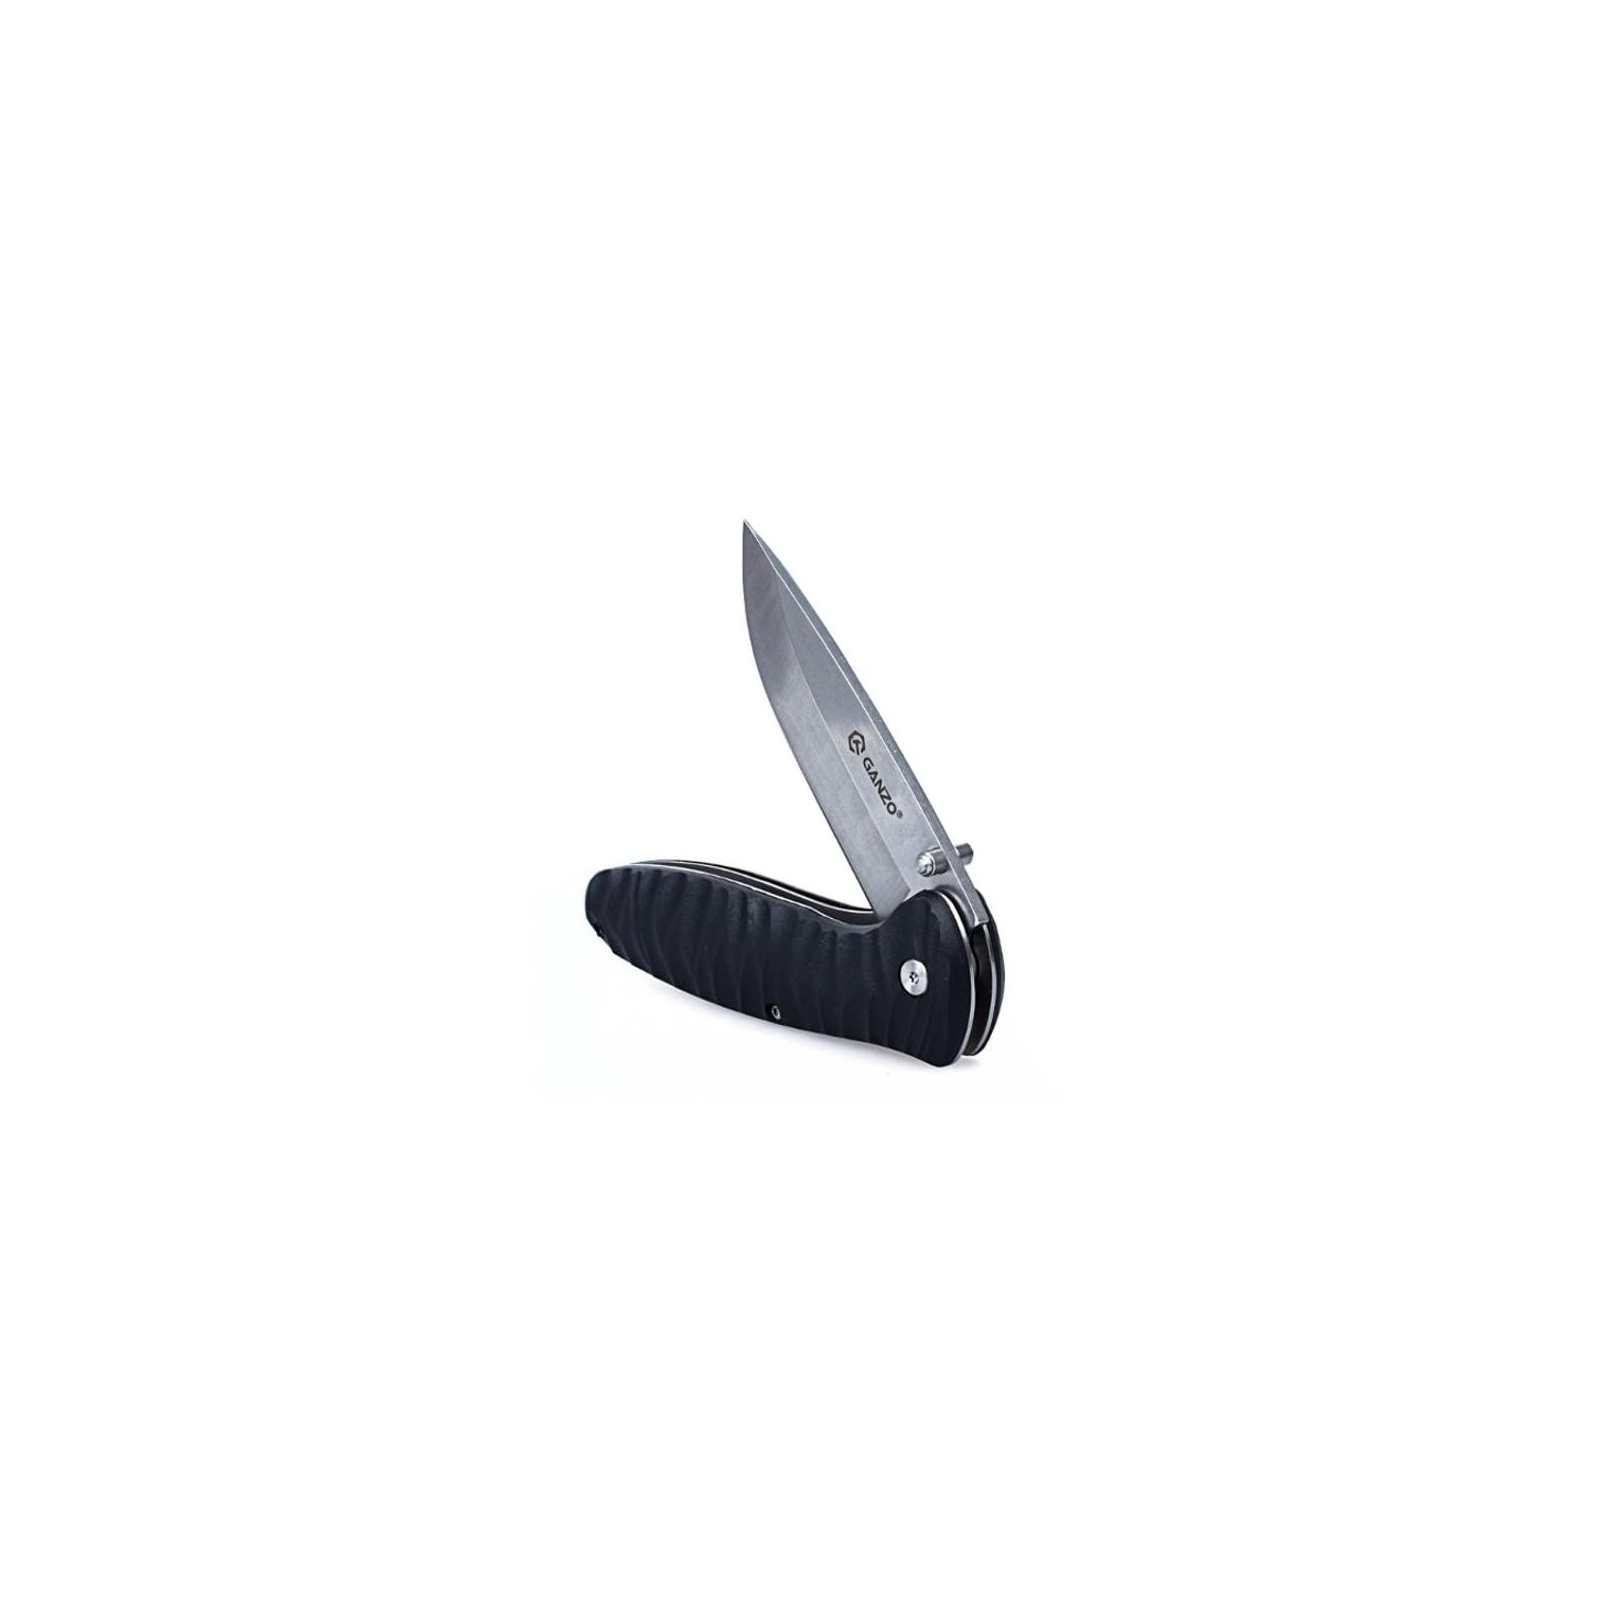 Нож Ganzo G6252-OR оранжевый (G6252-OR) изображение 4